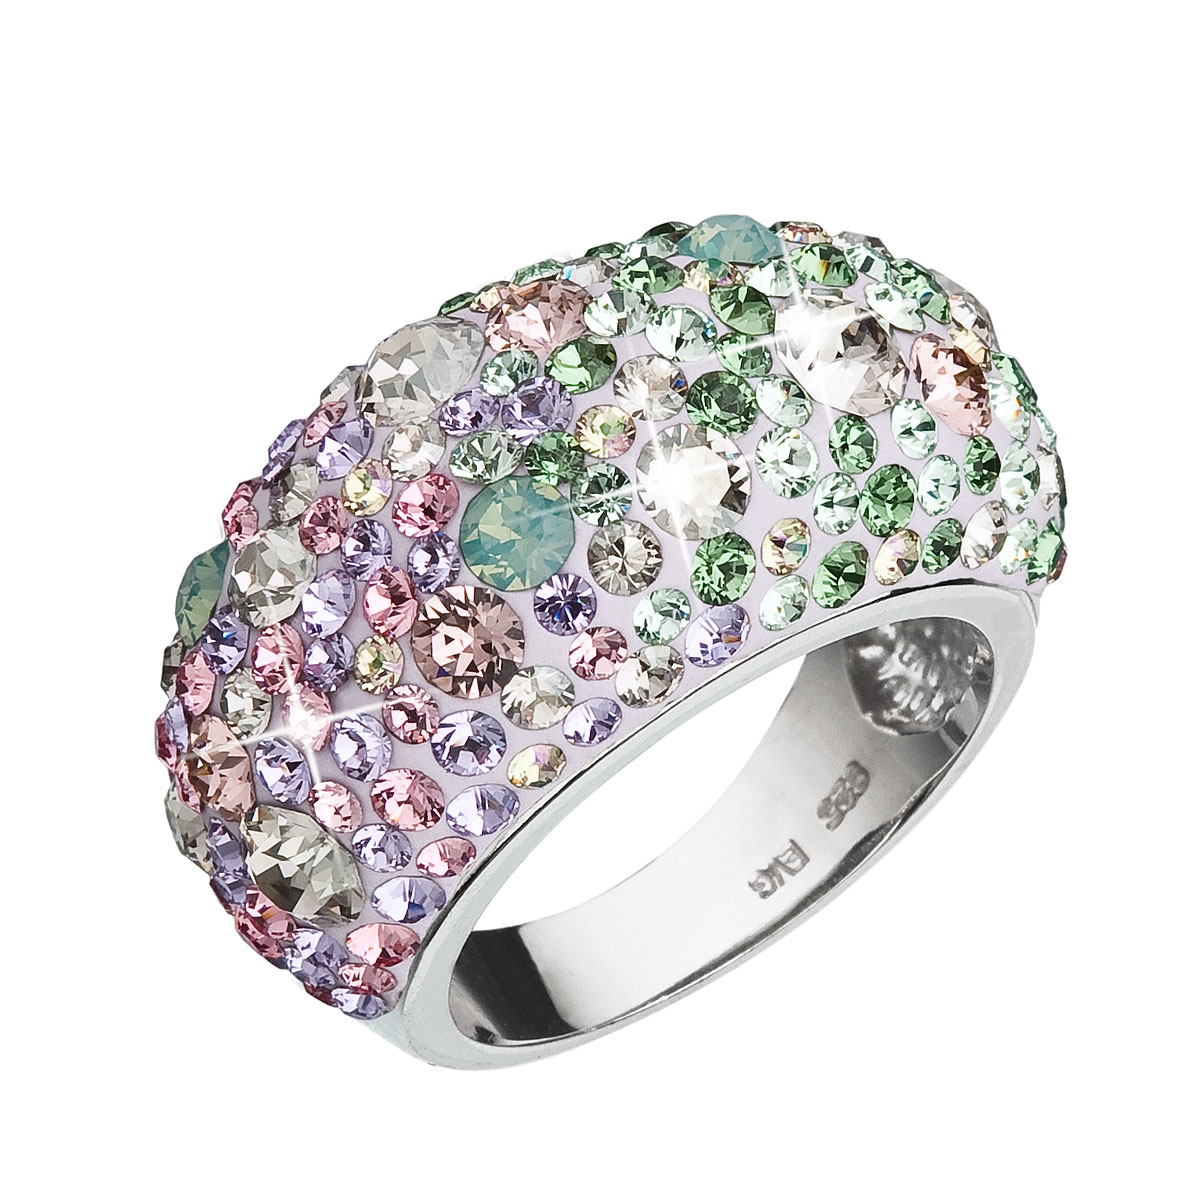 Strieborný prsteň s kryštálmi Crystals from Swarovski ®, Sakura